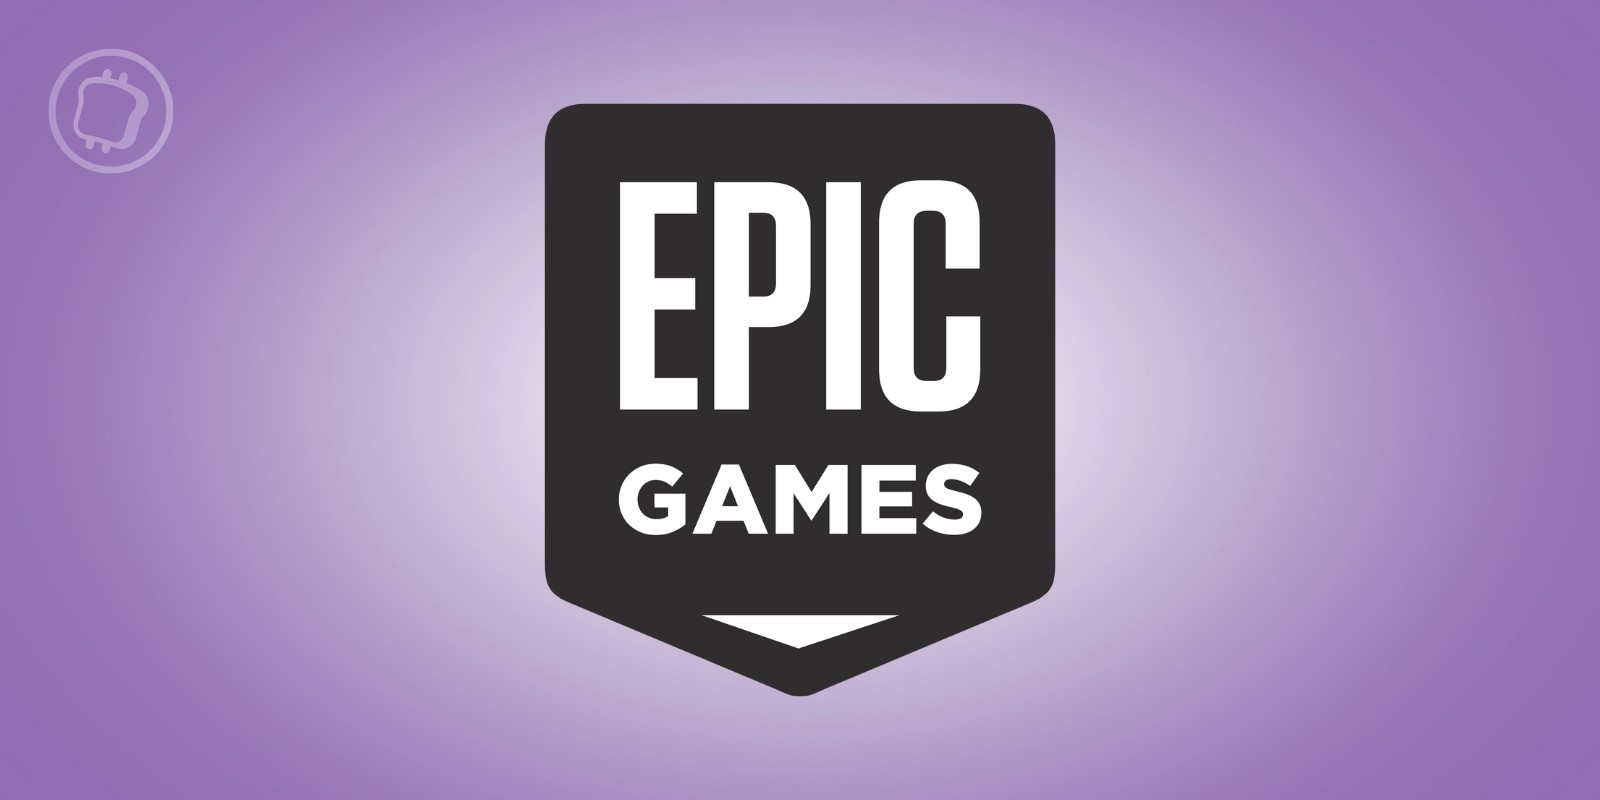 Le géant Epic Games prévoit de lancer une vingtaine de jeux cryptos